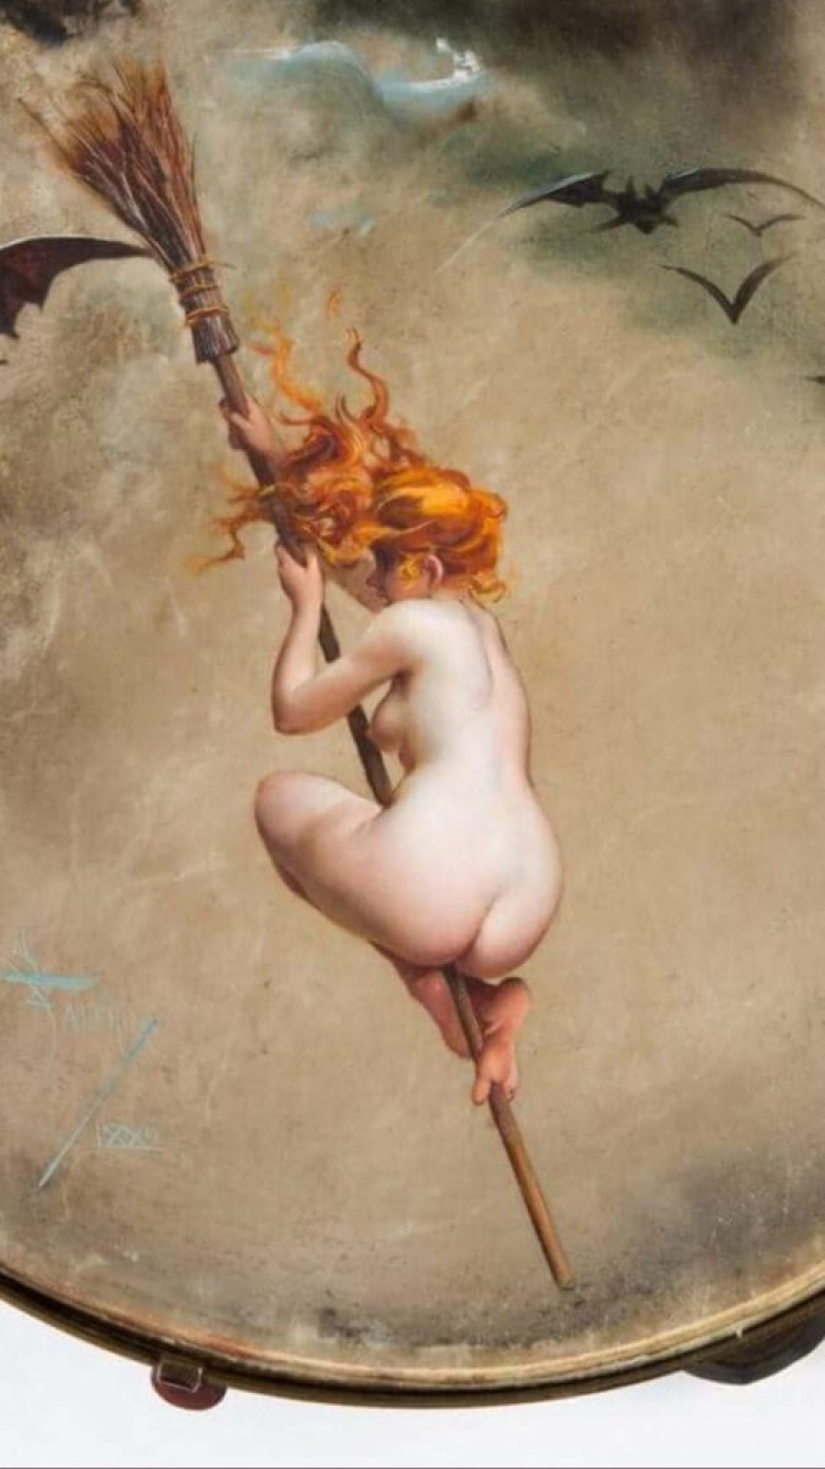 Hadas desnudas del artista Luis Ricardo Falero, quien fundó el estilo de fantasía en la pintura